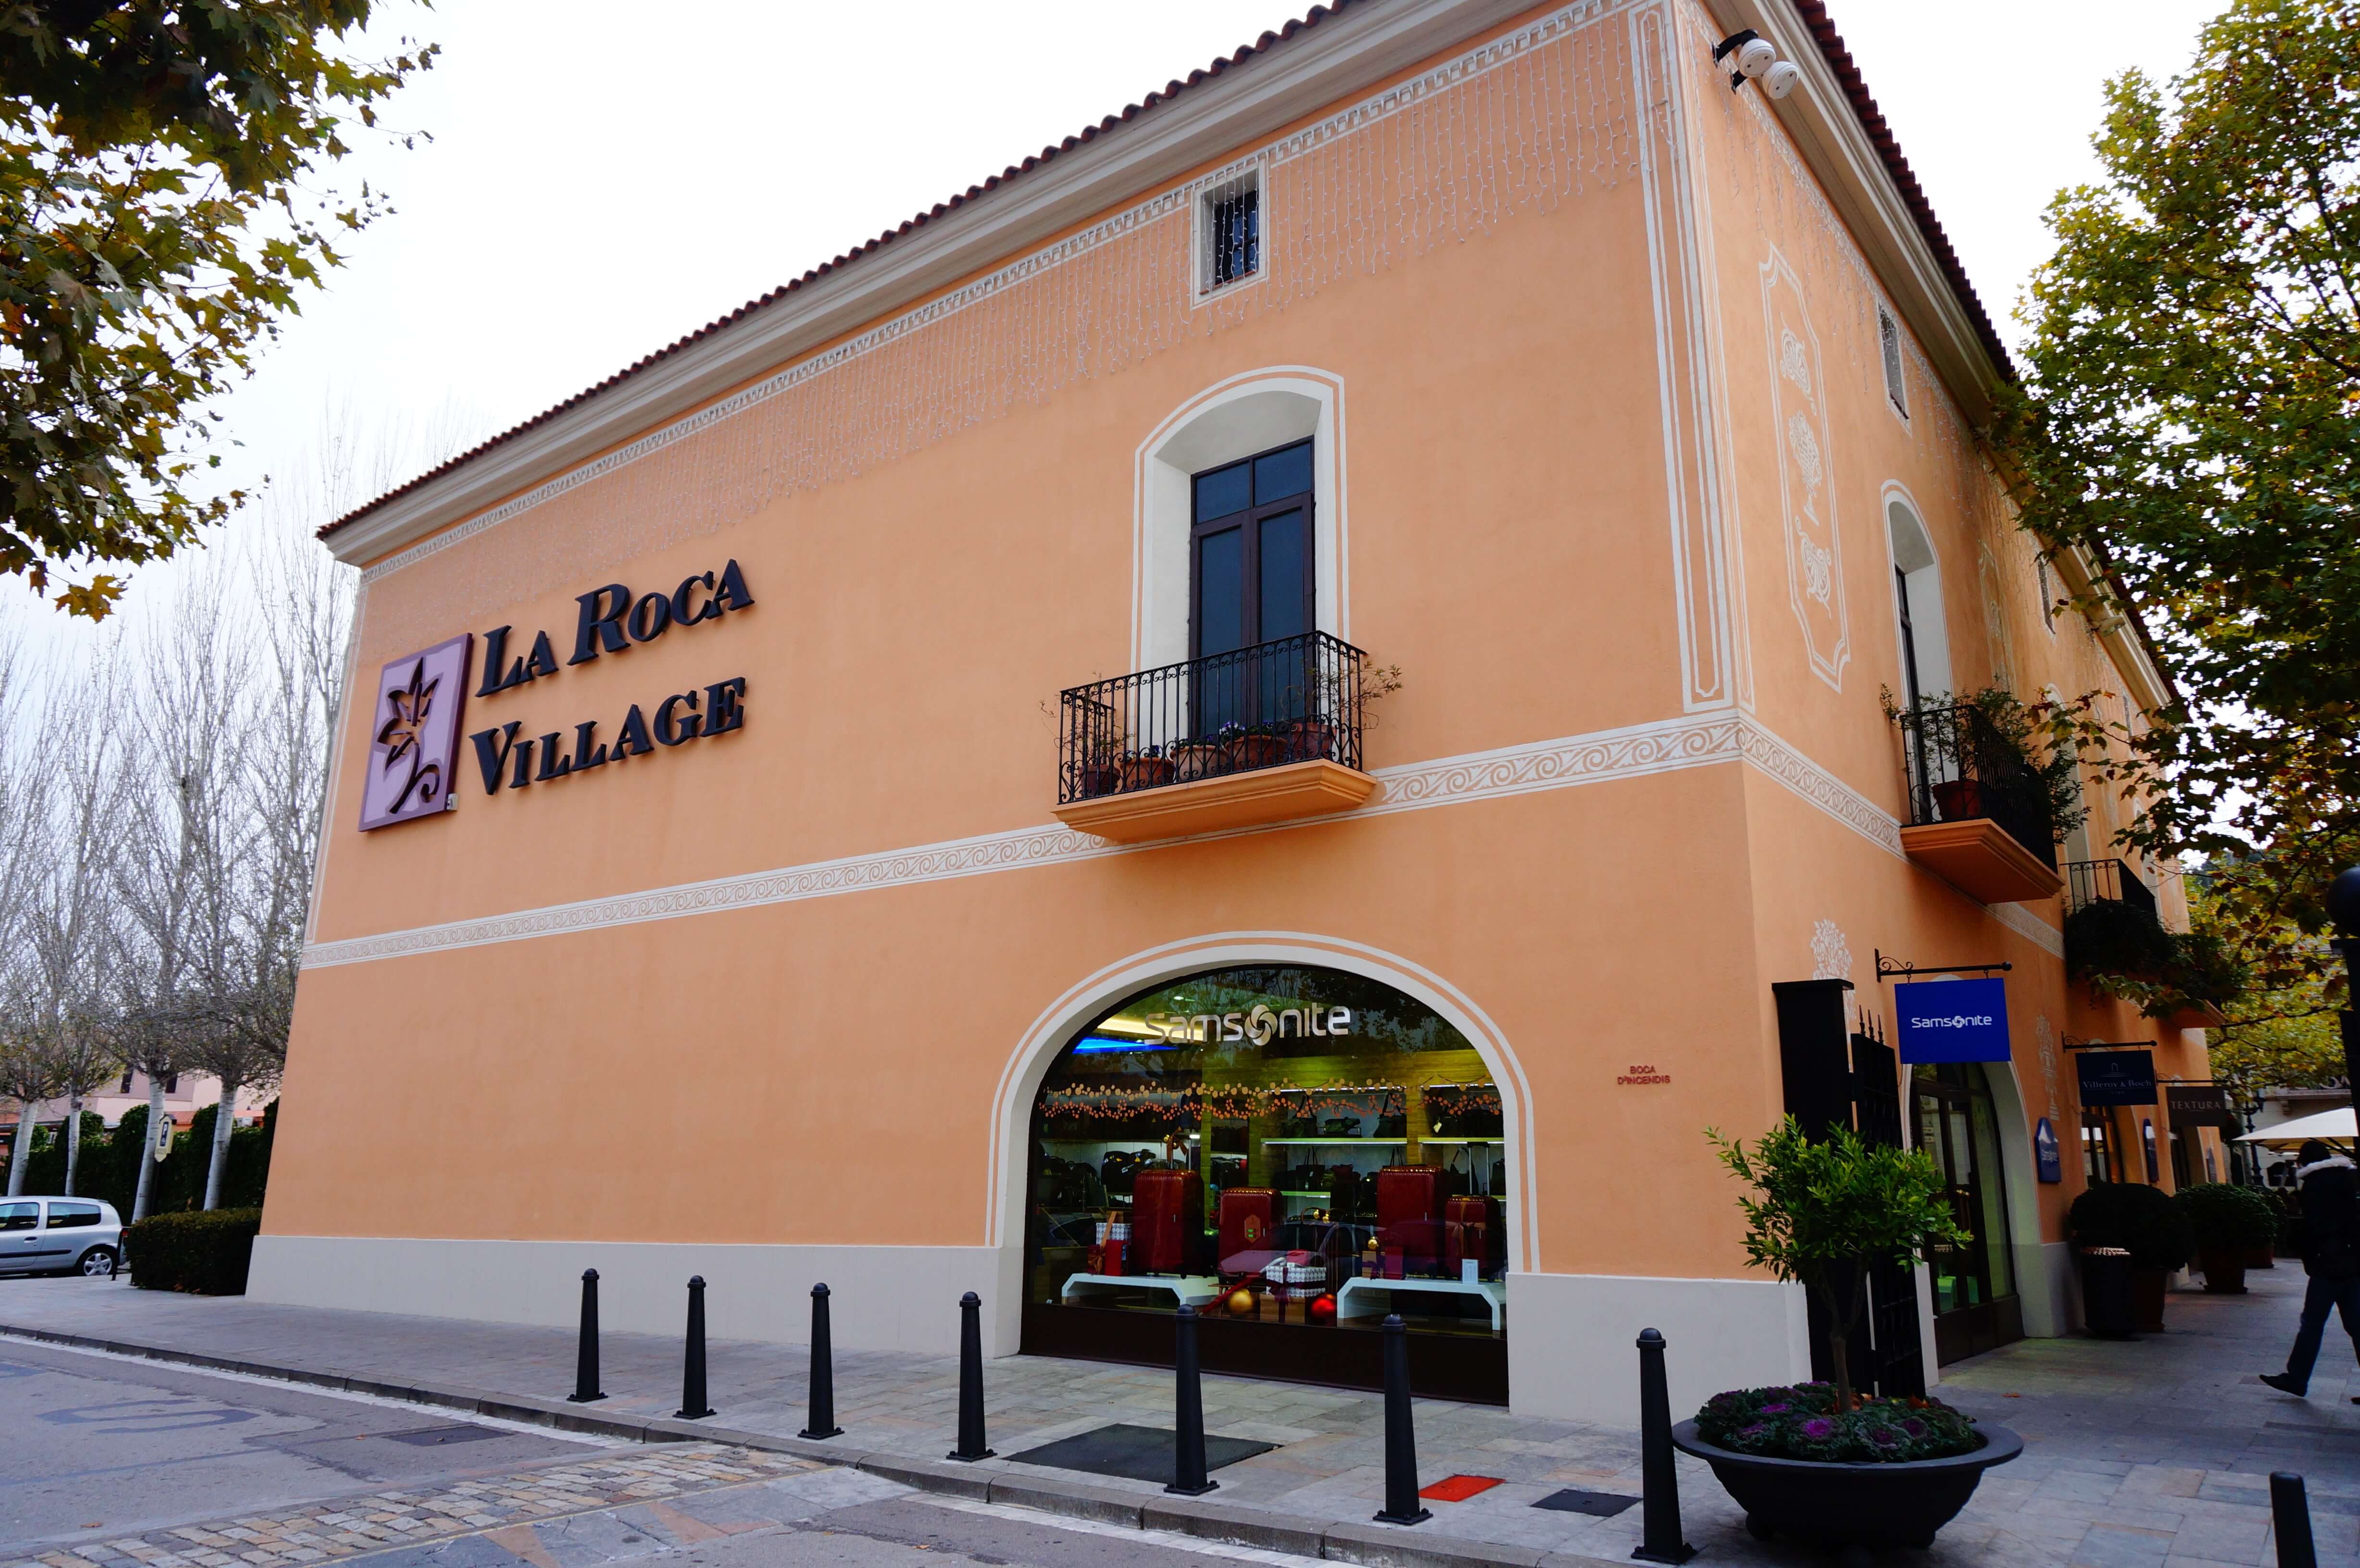 La Roca Village | Shuttle Transfer from Barcelona | One way /Roudtrip